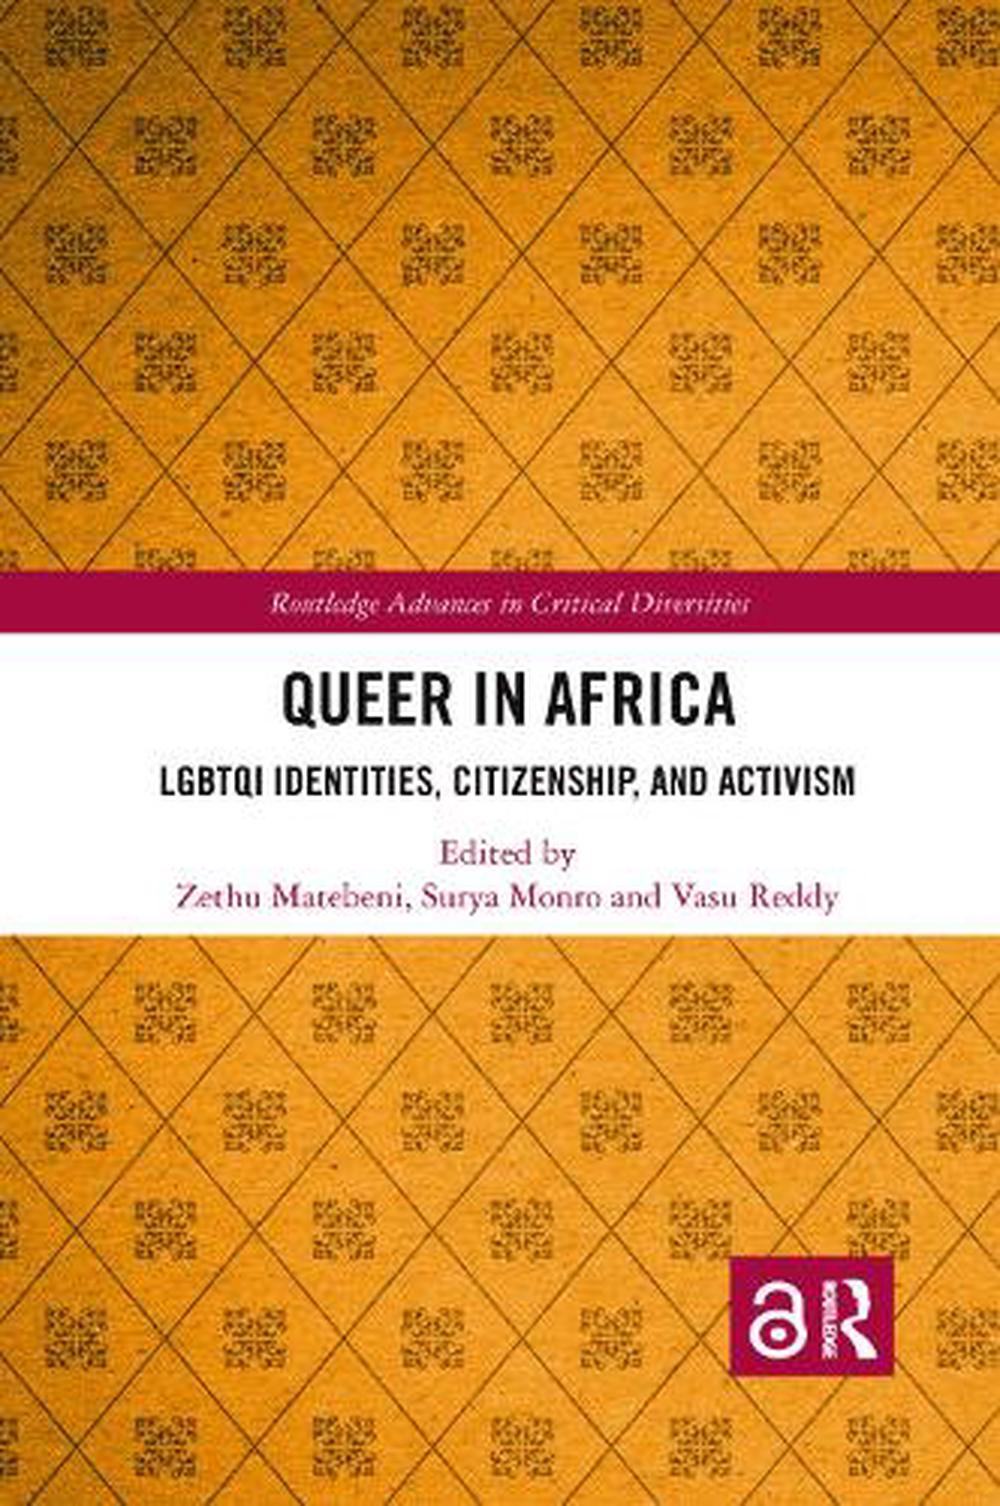 Queer Africa 2 by Karen Martin